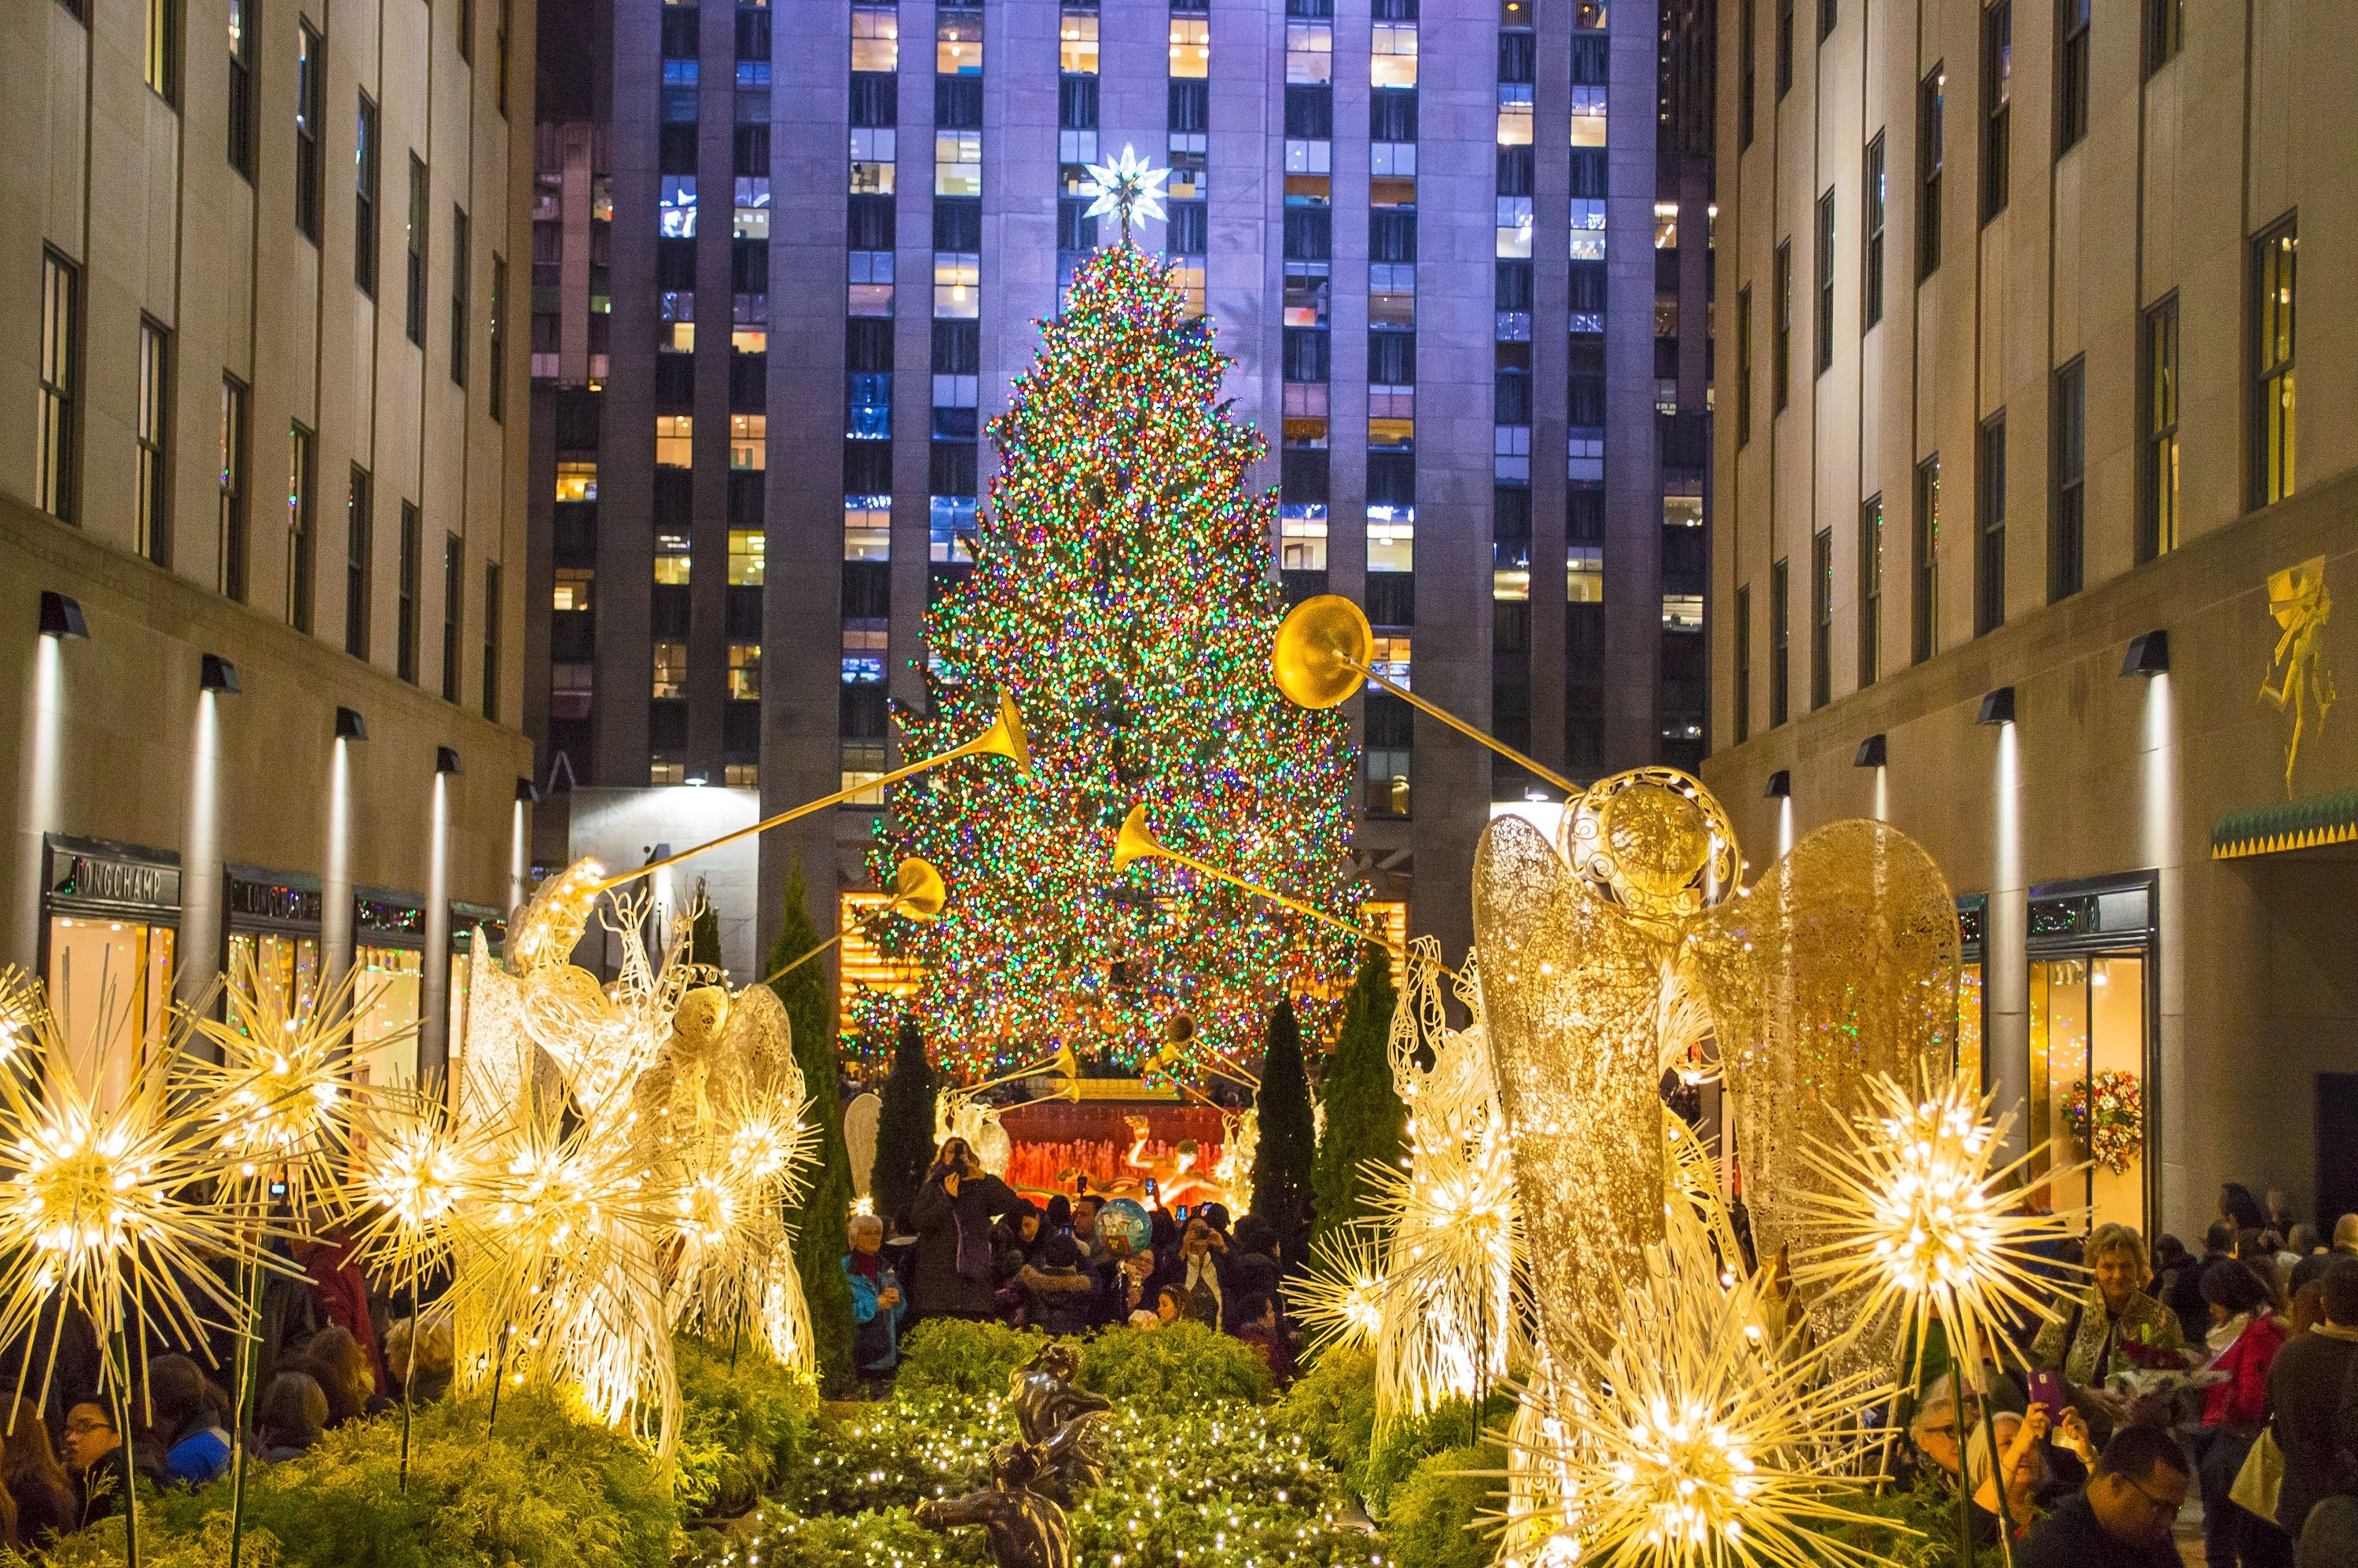 Rockefeller Christmas Tree Lighting 2019 Performers
 When is the 2014 Rockefeller Center Christmas Tree